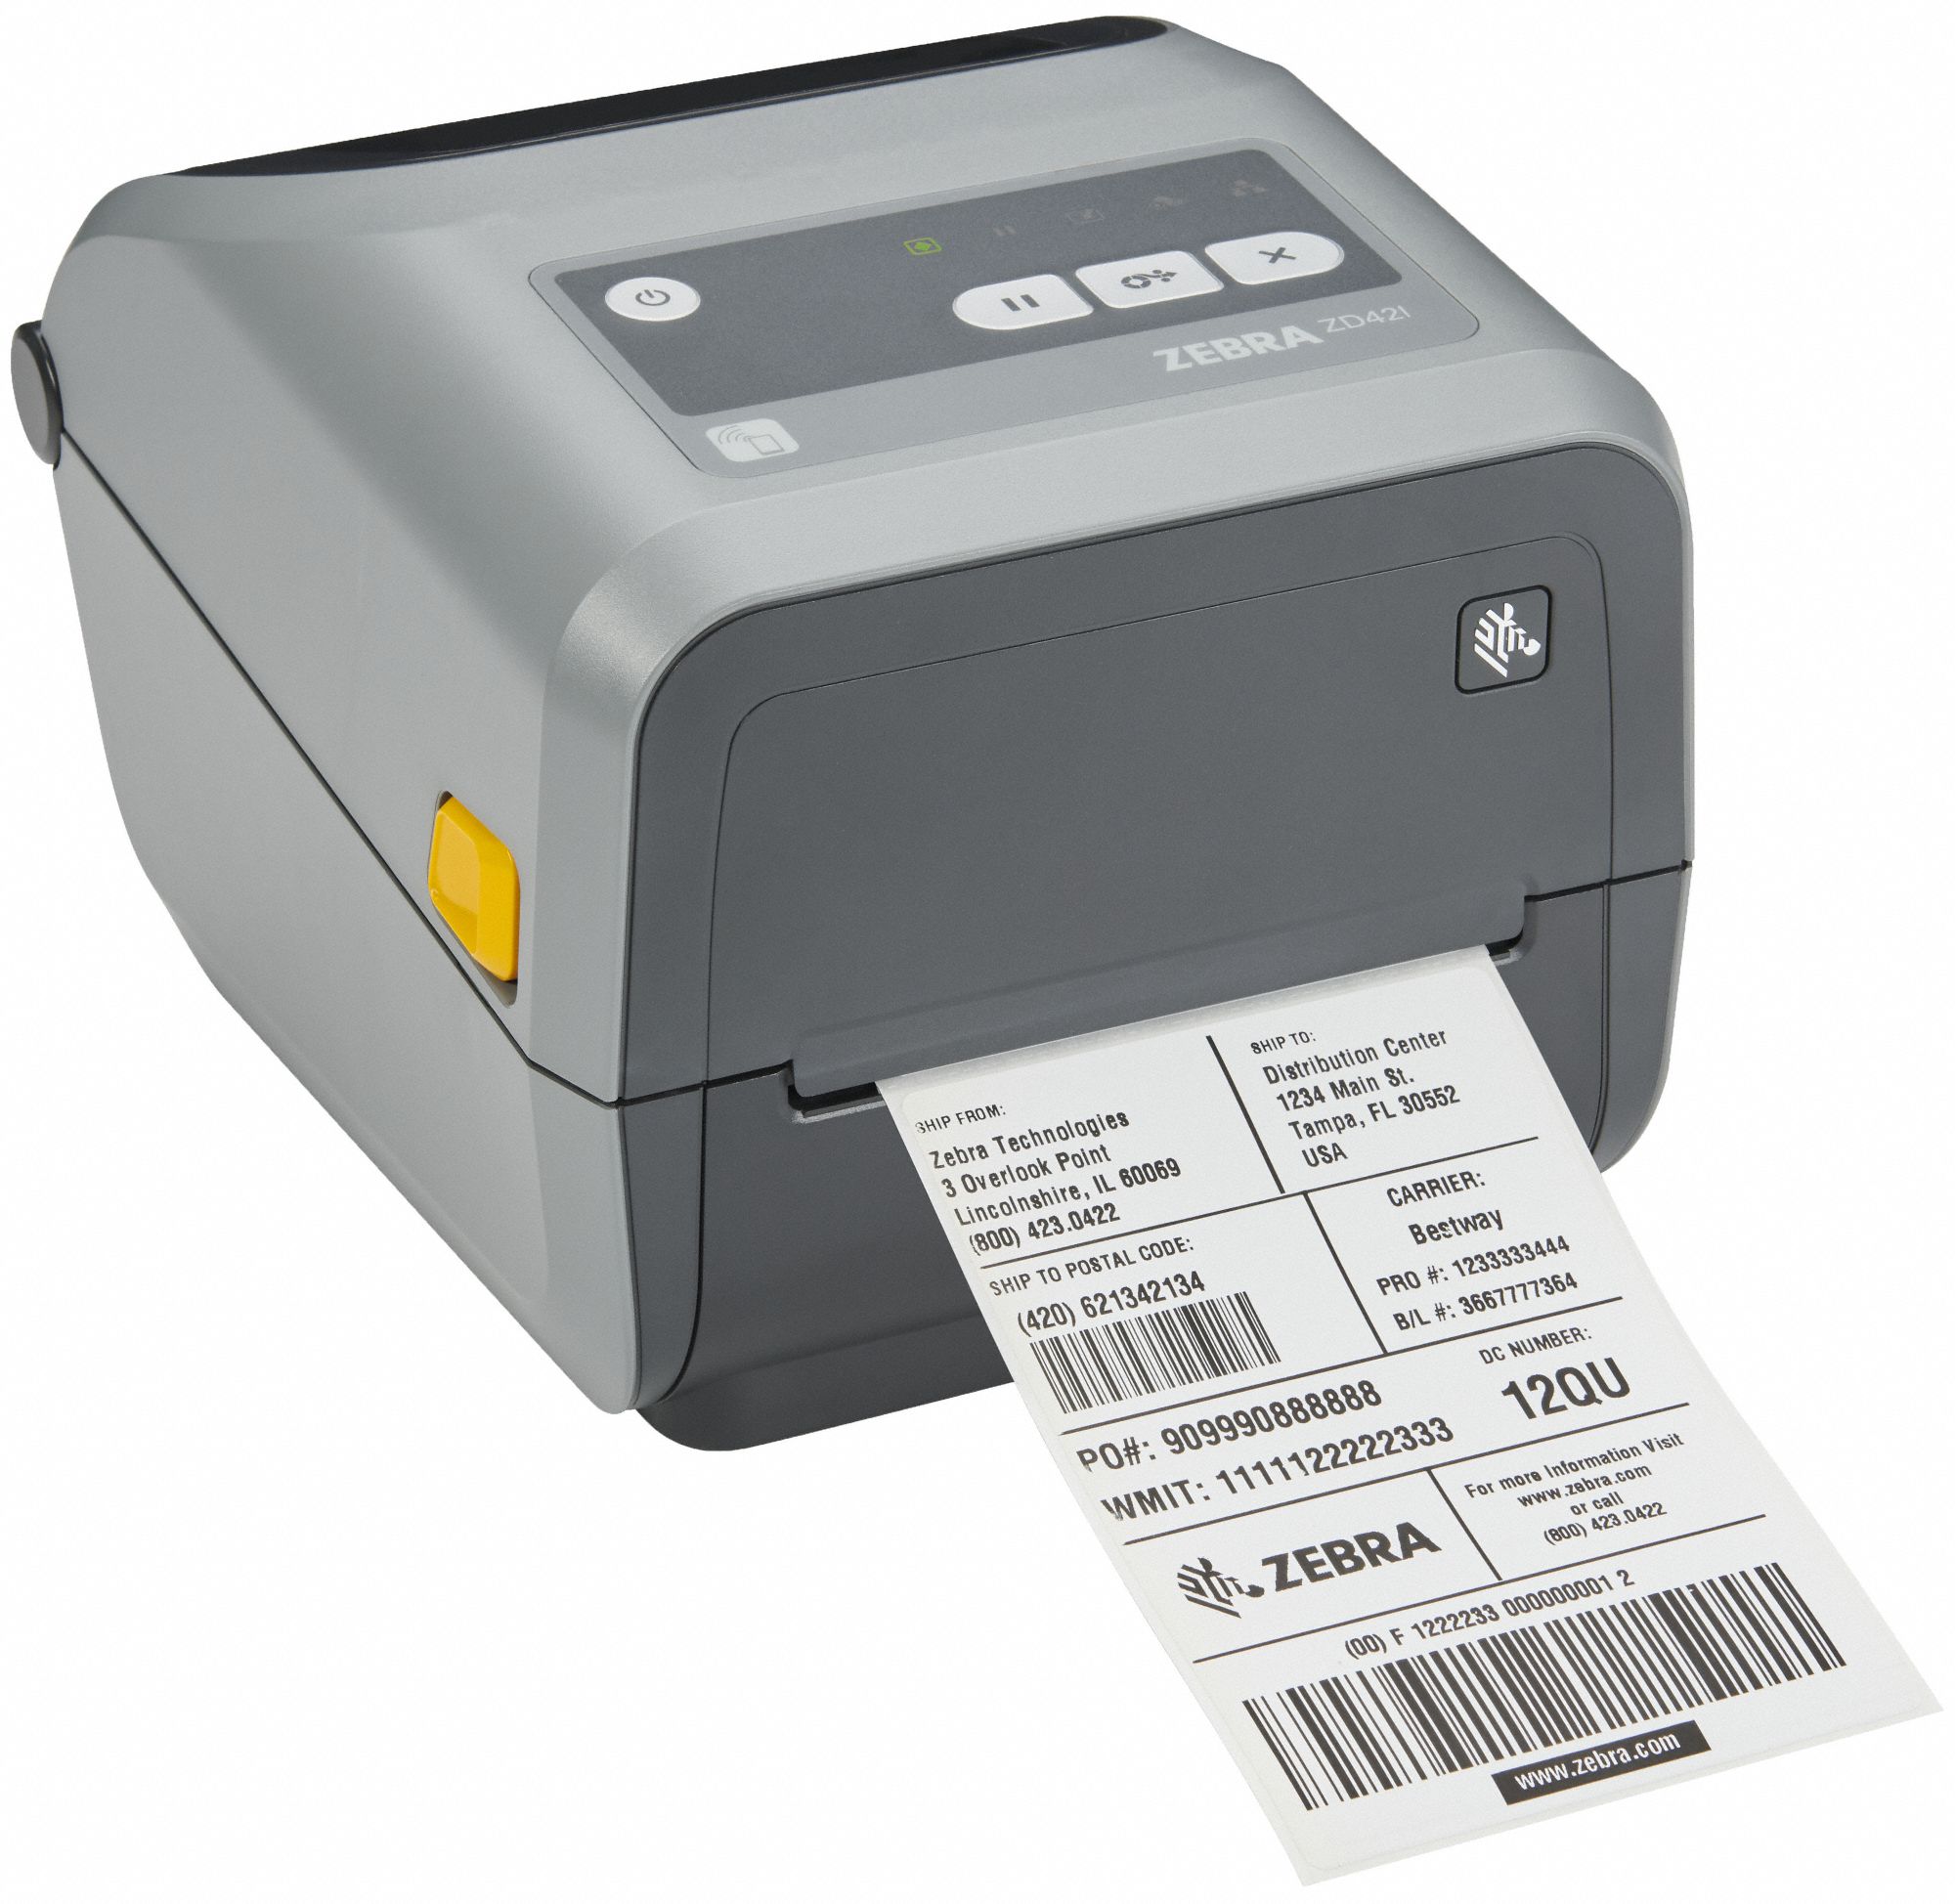 ZEBRA, Max. Print Wd, 300 dpi, Transfer Printer - 60EA34|ZD42043-C01E00EZ - Grainger